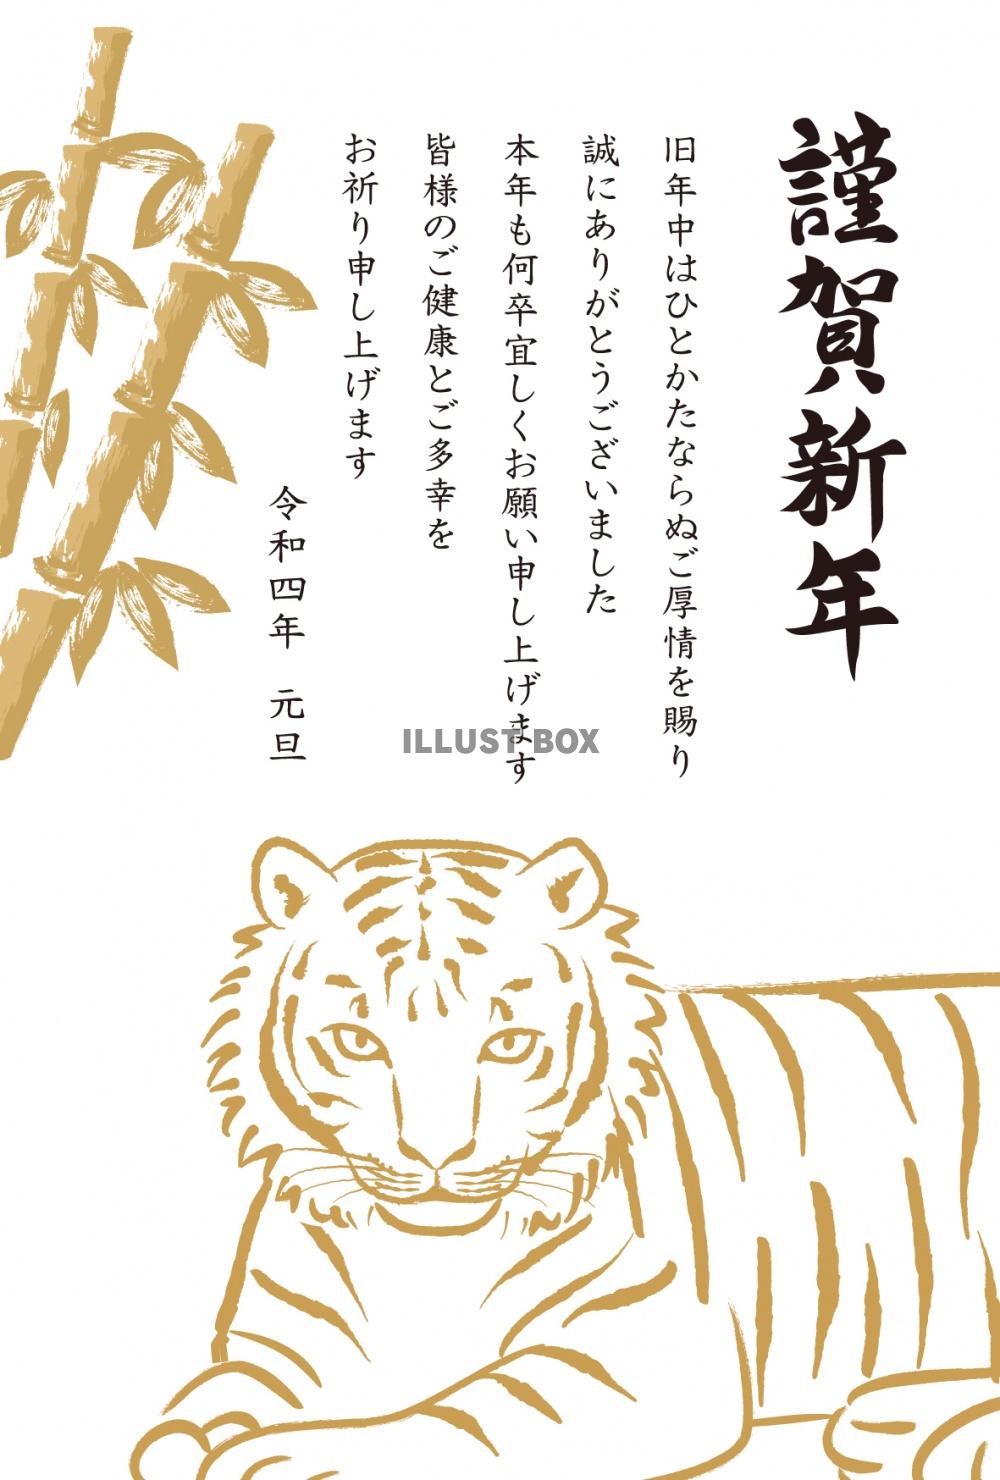 無料イラスト 22年寅年の年賀状 金色の筆で描いたリアルな虎のイラスト